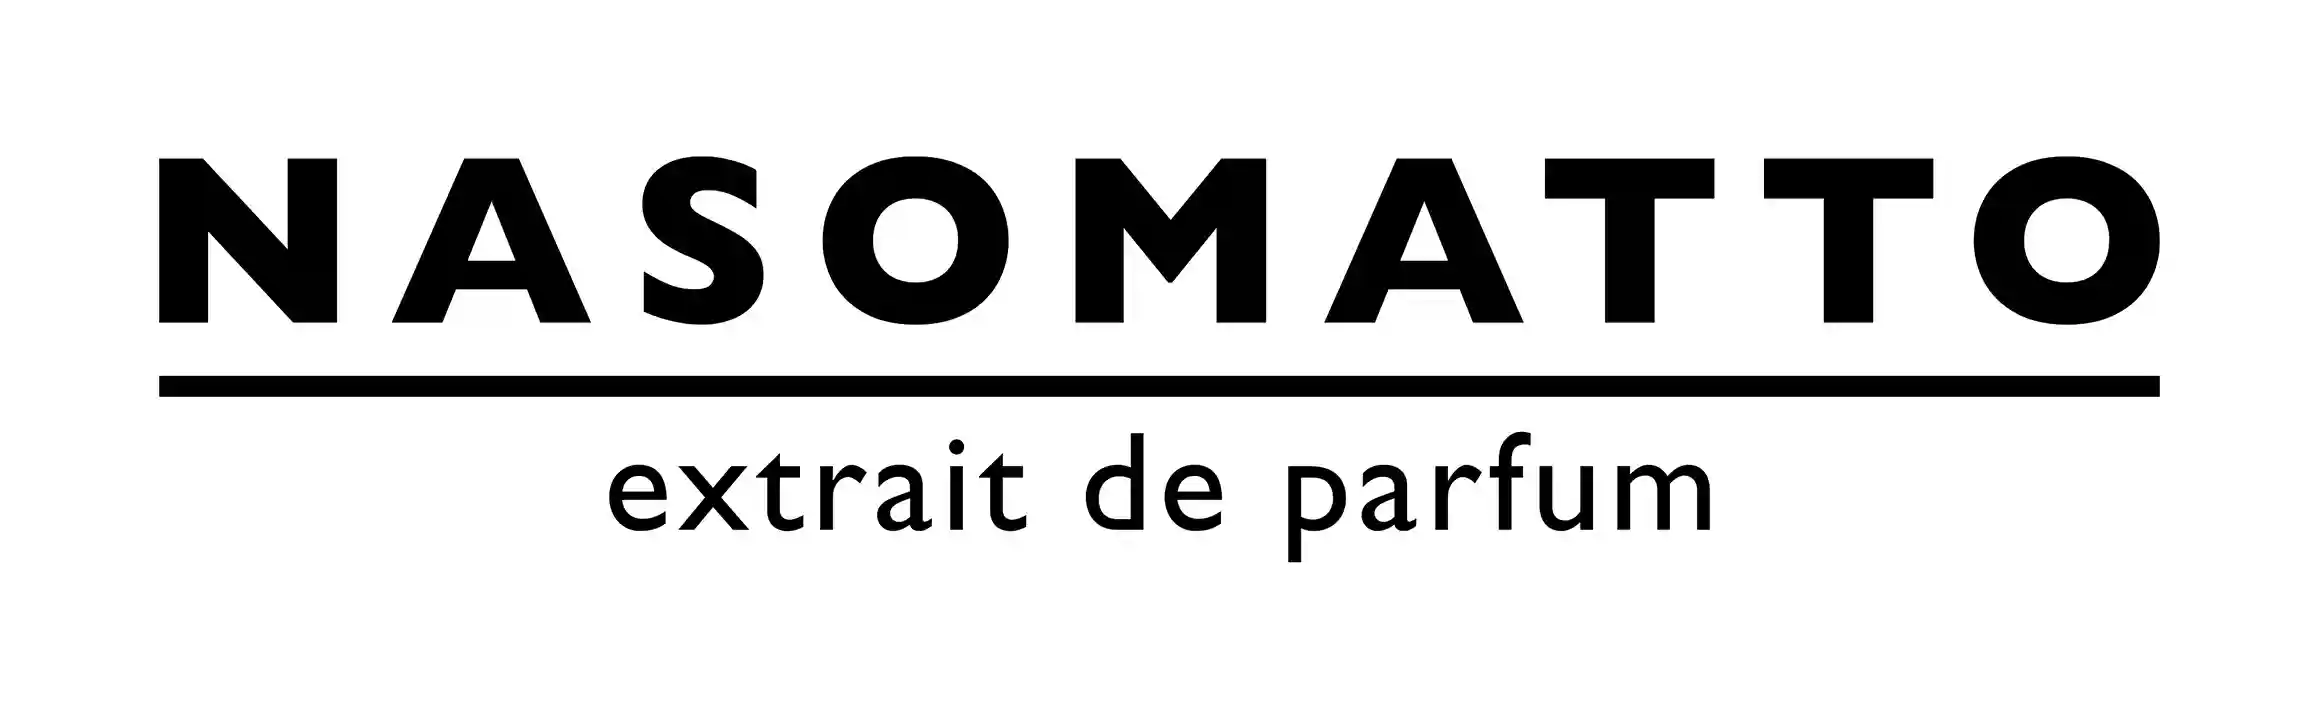 Nasomatto-Logo